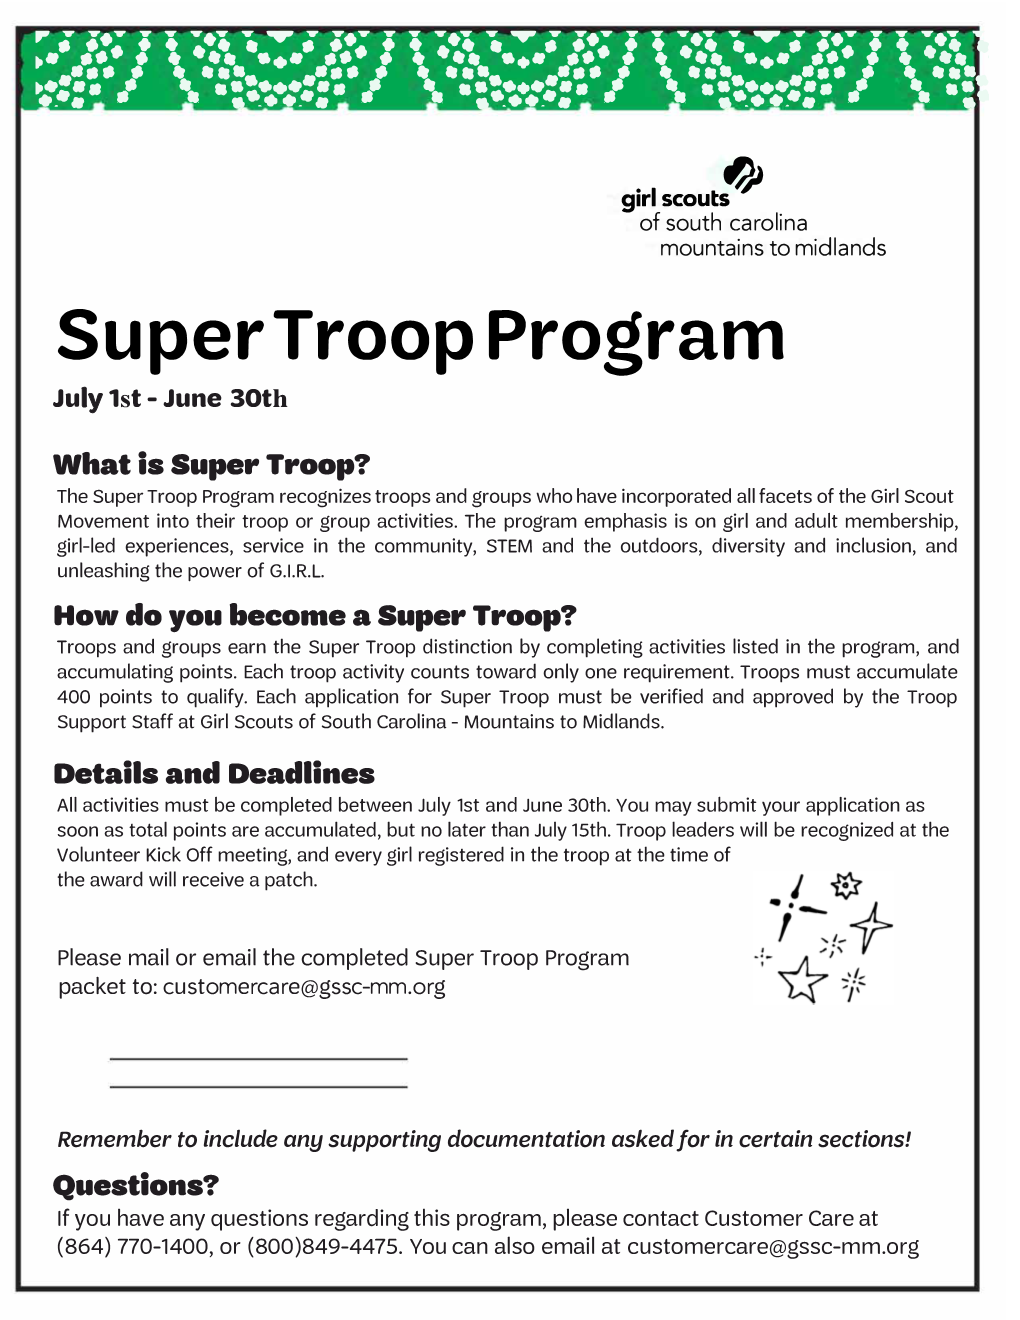 Super Troop Program July 1St - June 30Th